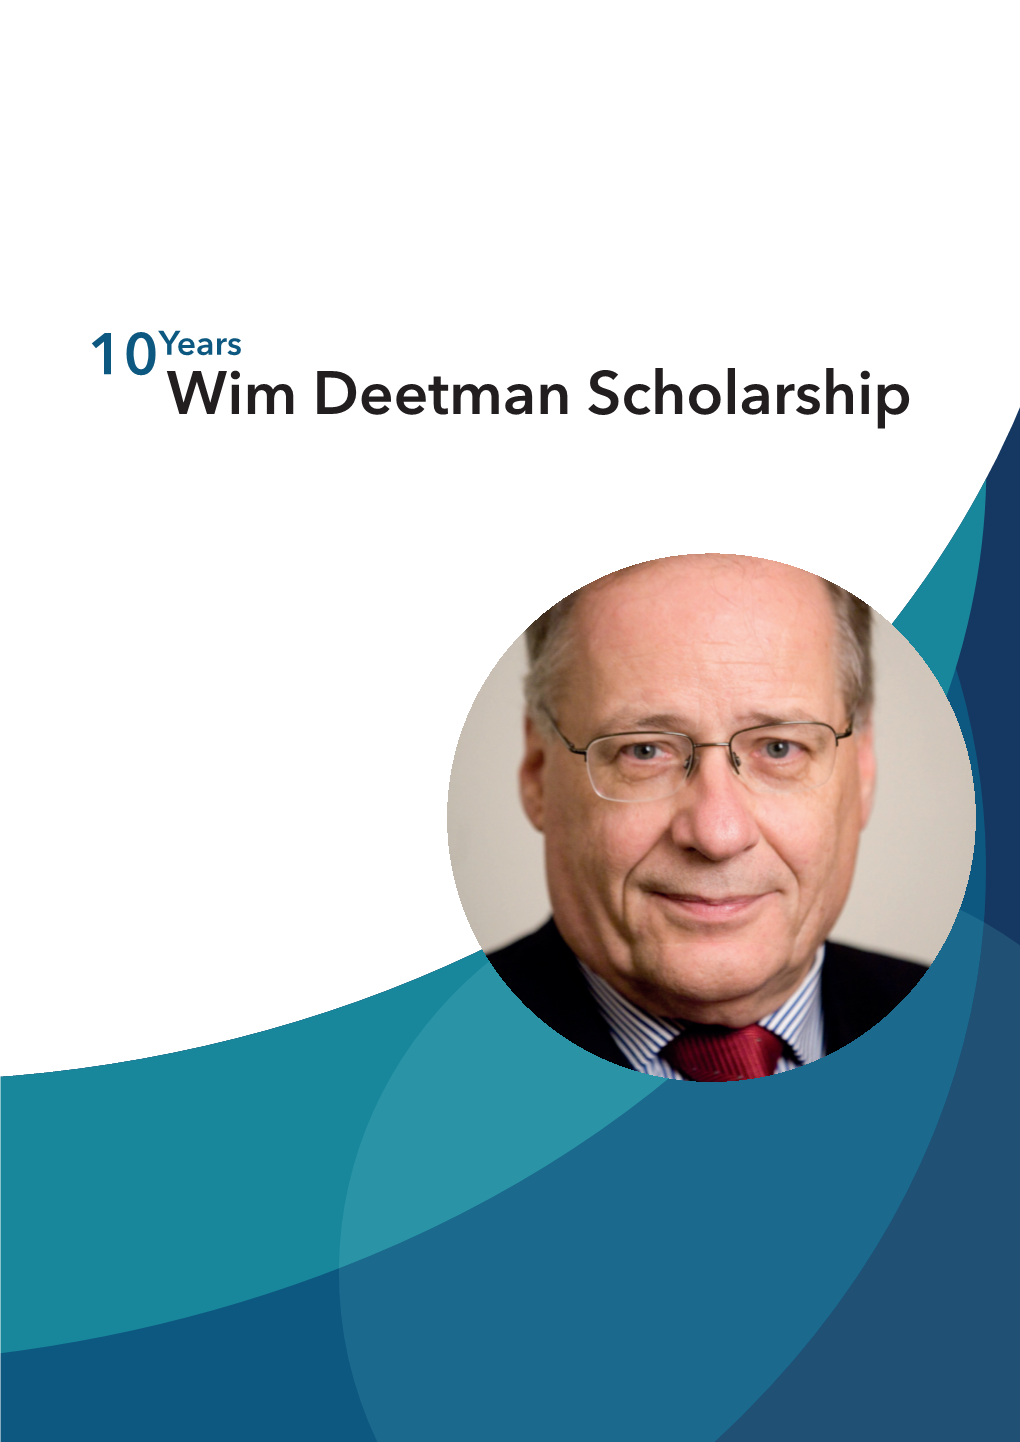 10Years Wim Deetman Scholarship Contents